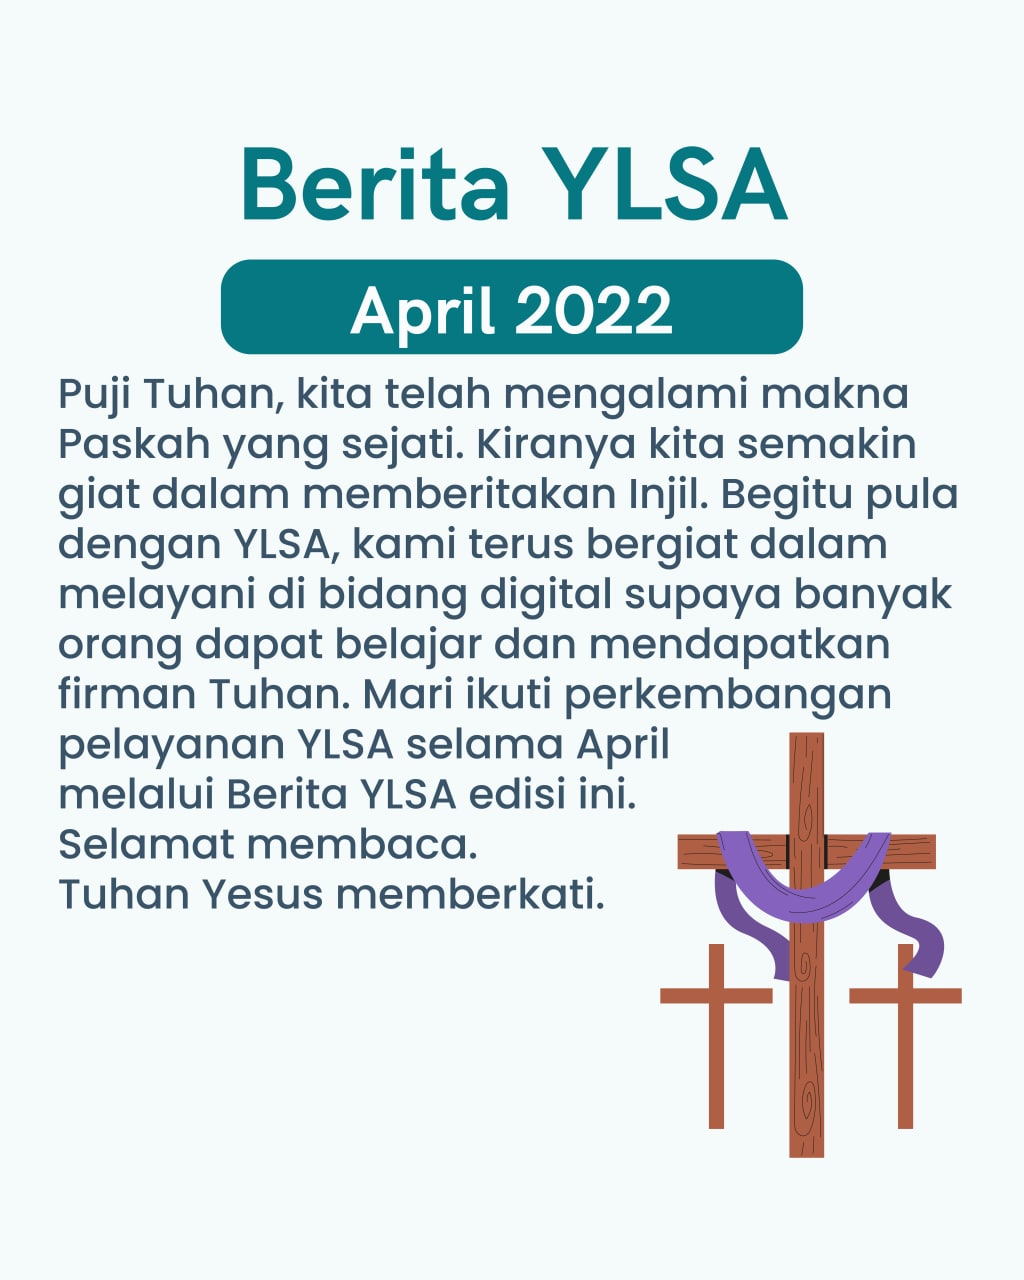 Ikuti perkembangan pelayanan YLSA selama April melalui Berita YLSA edisi ini.